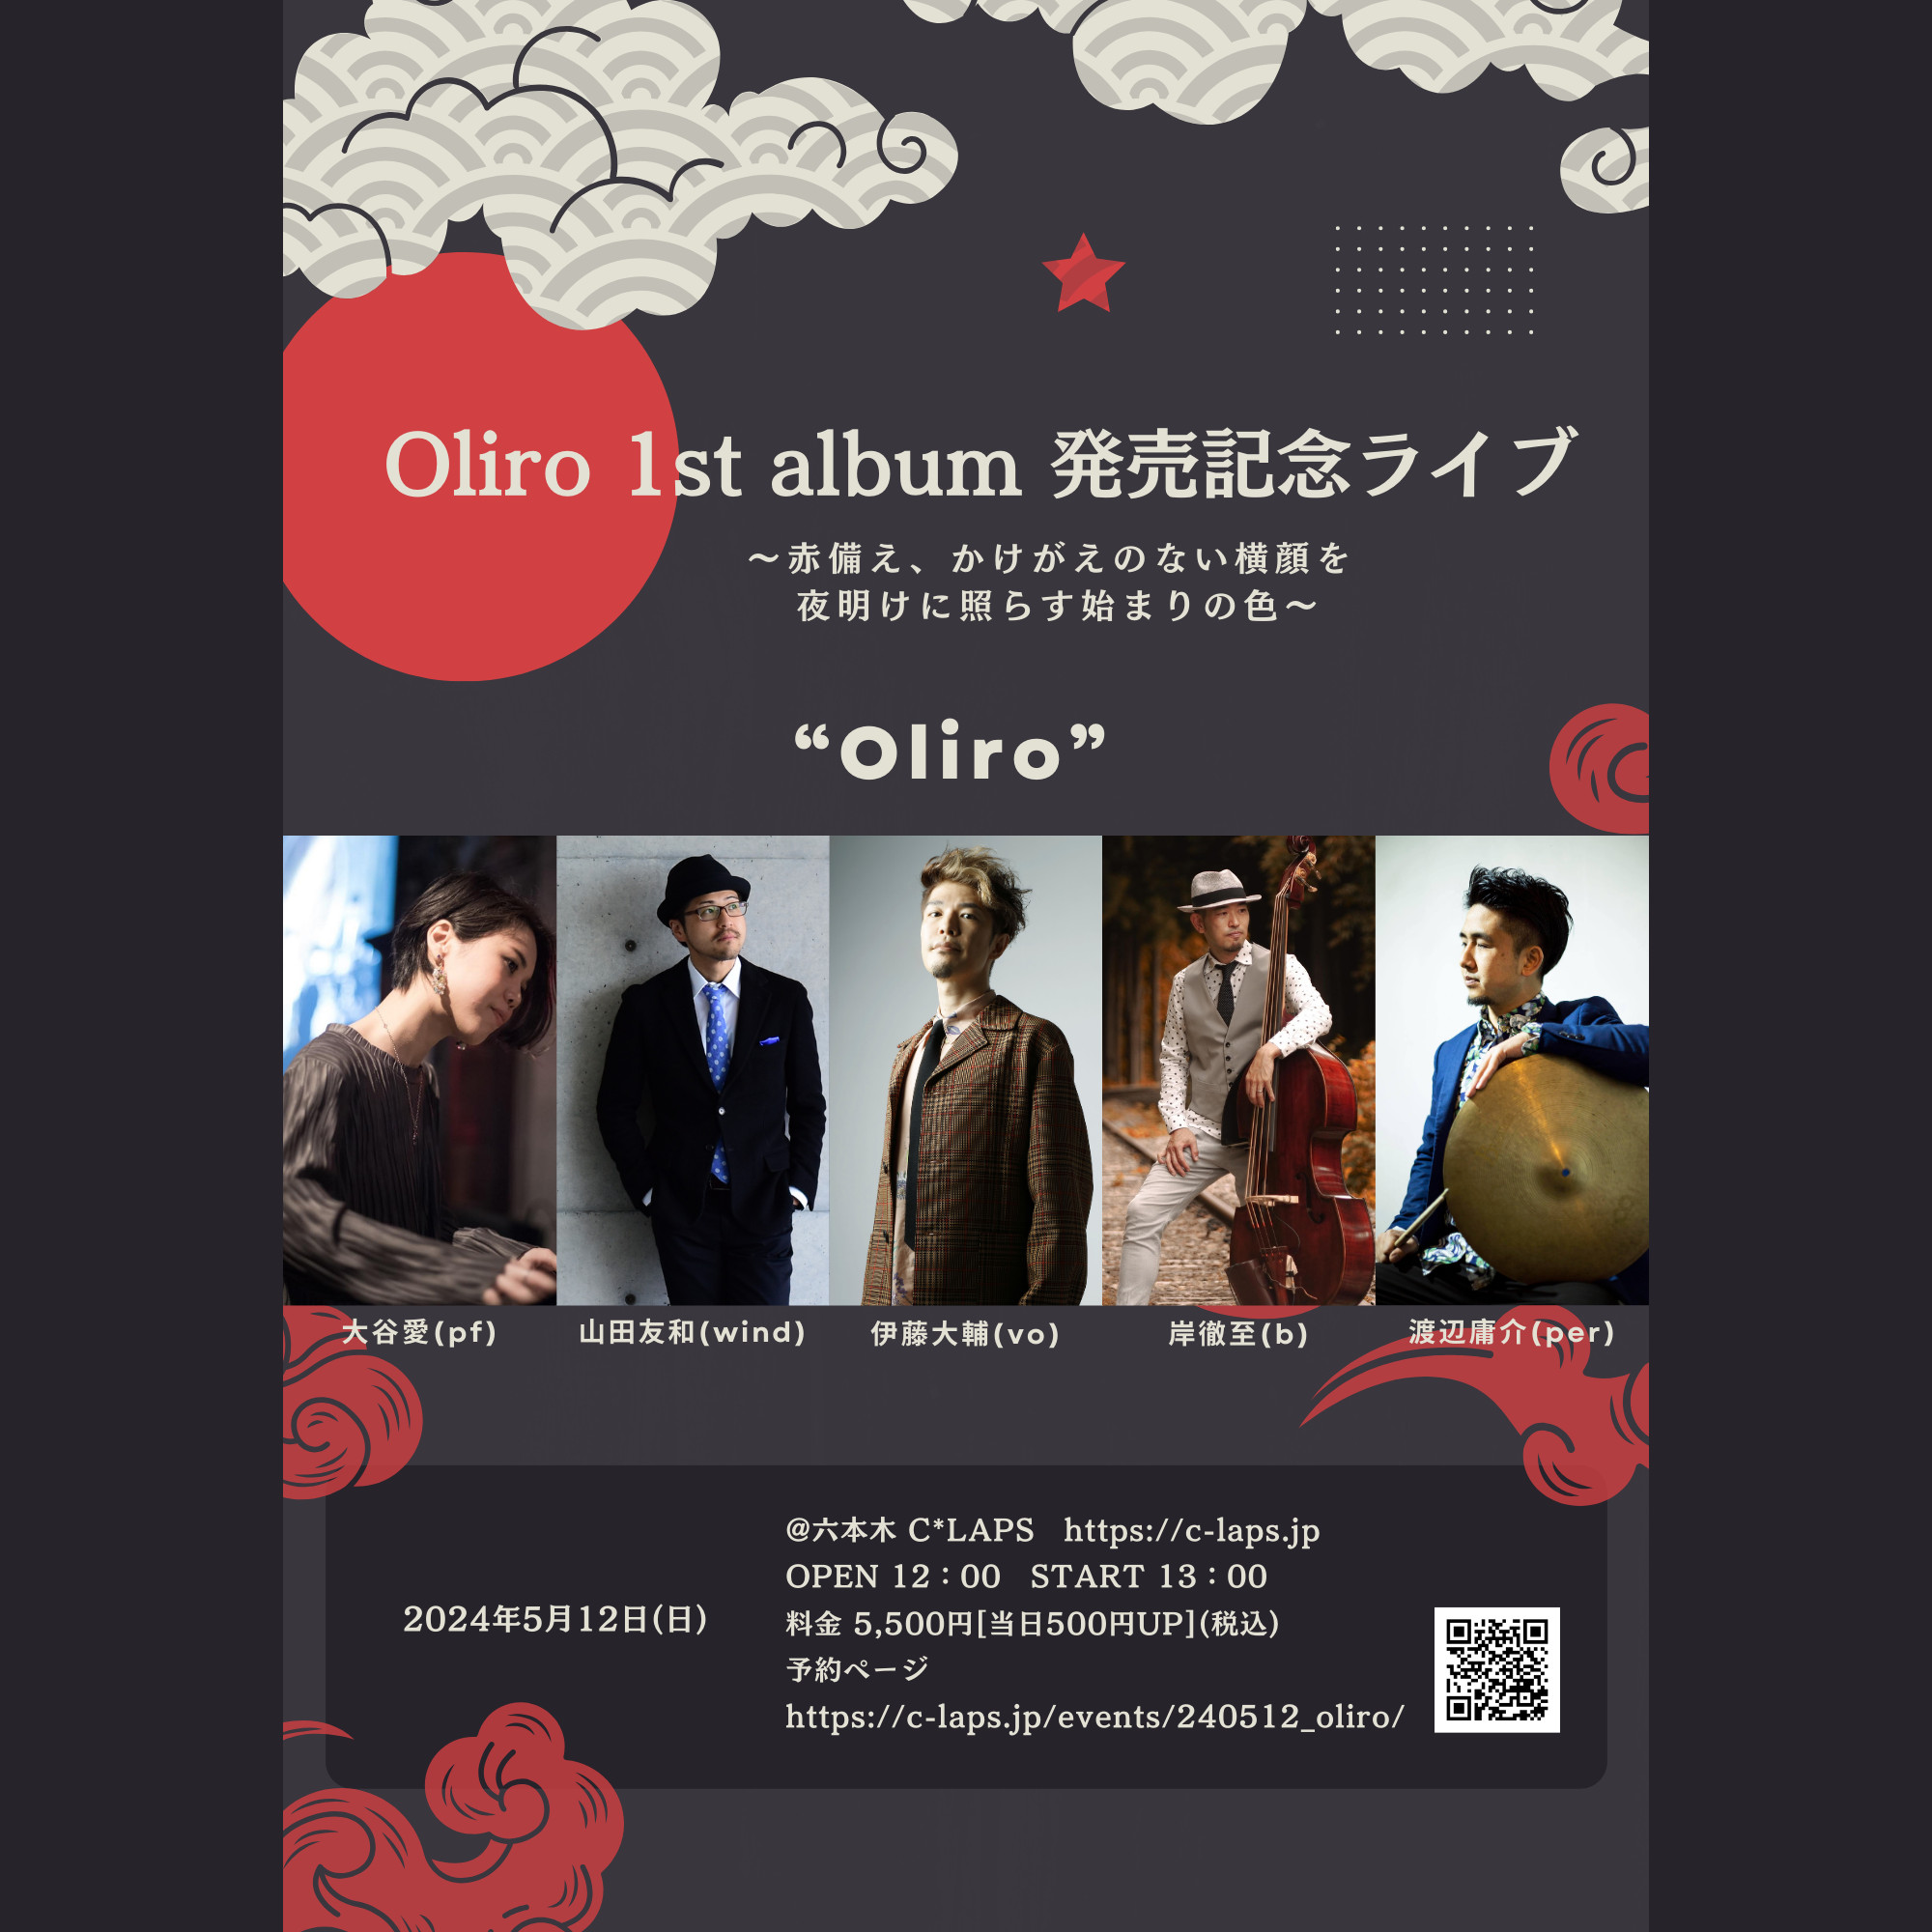 Oliro 1st album 発売記念ライブ ～赤備え、かけがえのない横顔を 夜明けに照らす始まりの色～《同時配信あり》